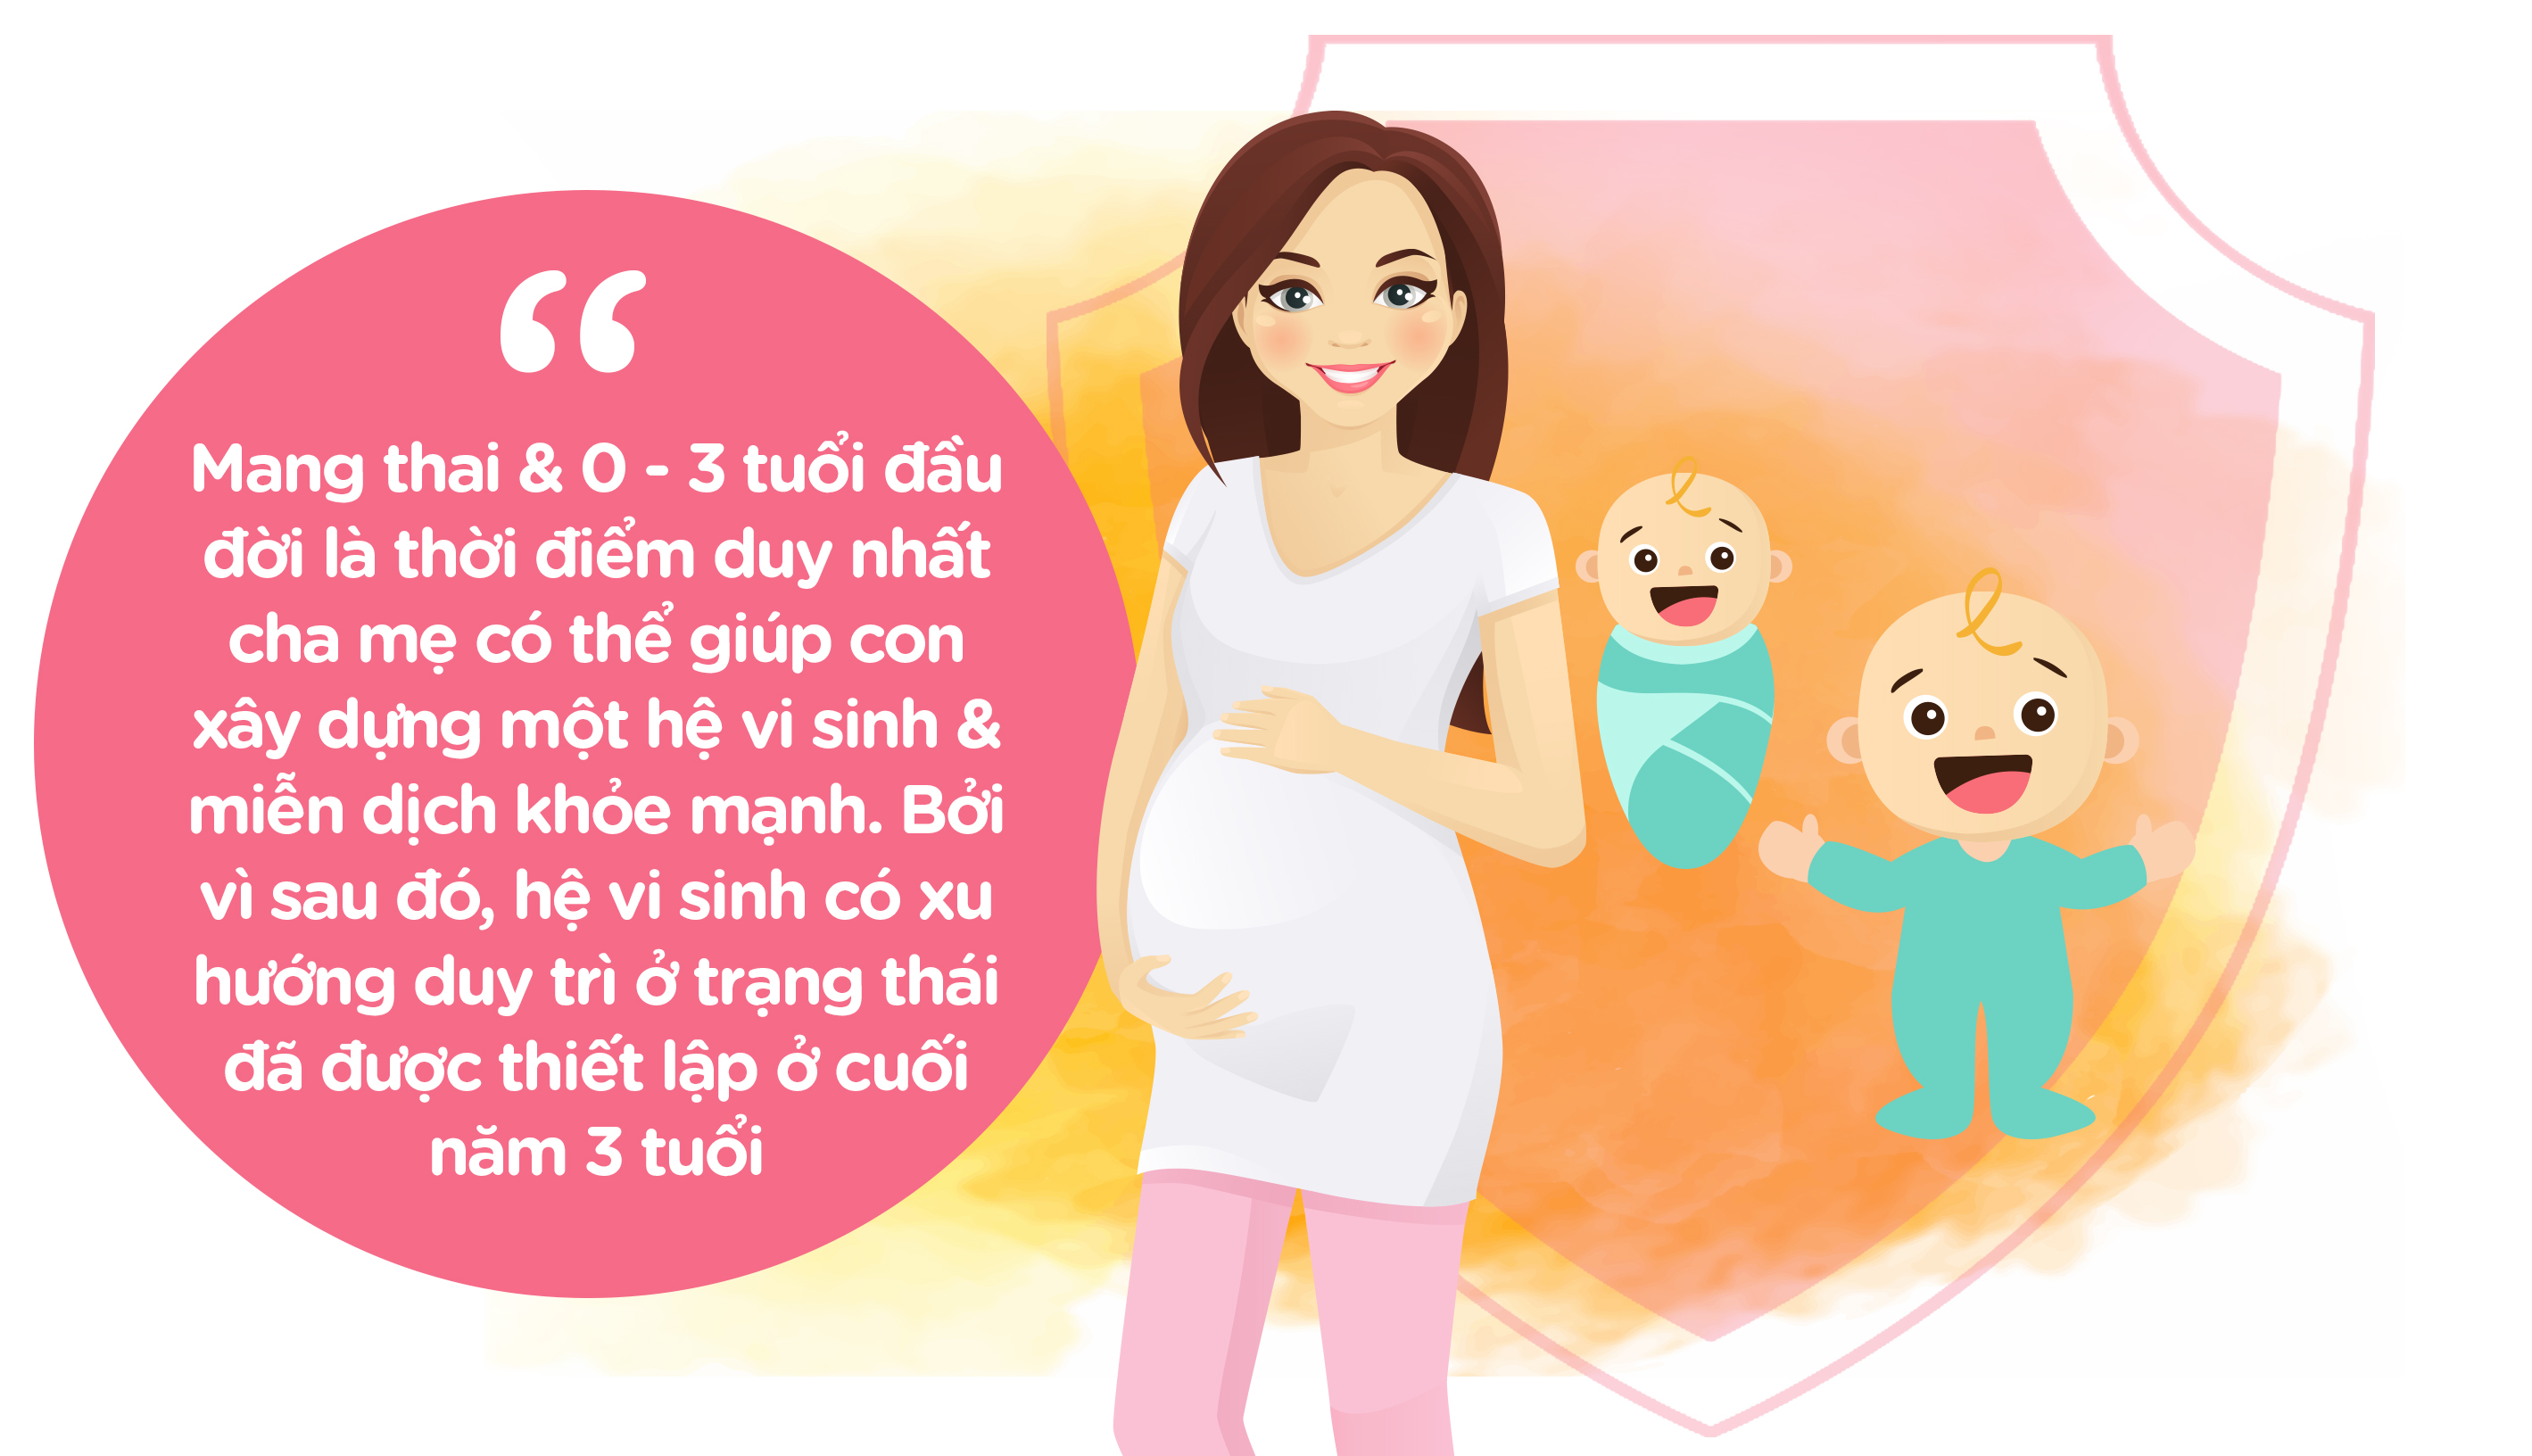 Hãy chăm sóc tốt hệ vi sinh ngay từ khi mang thai